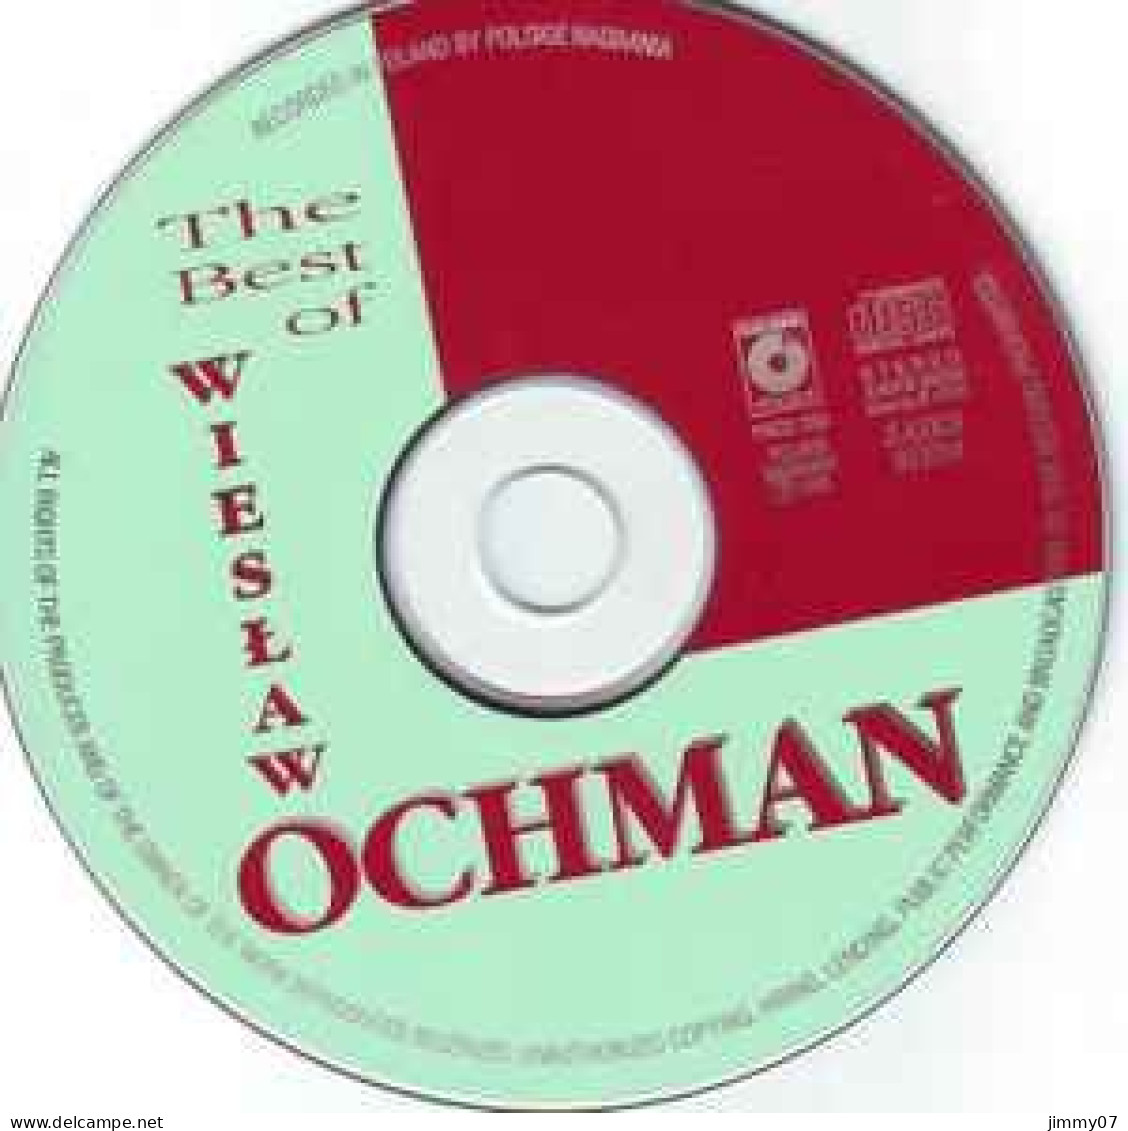 Wiesław Ochman - The Best Of (CD, Comp) - Clásica